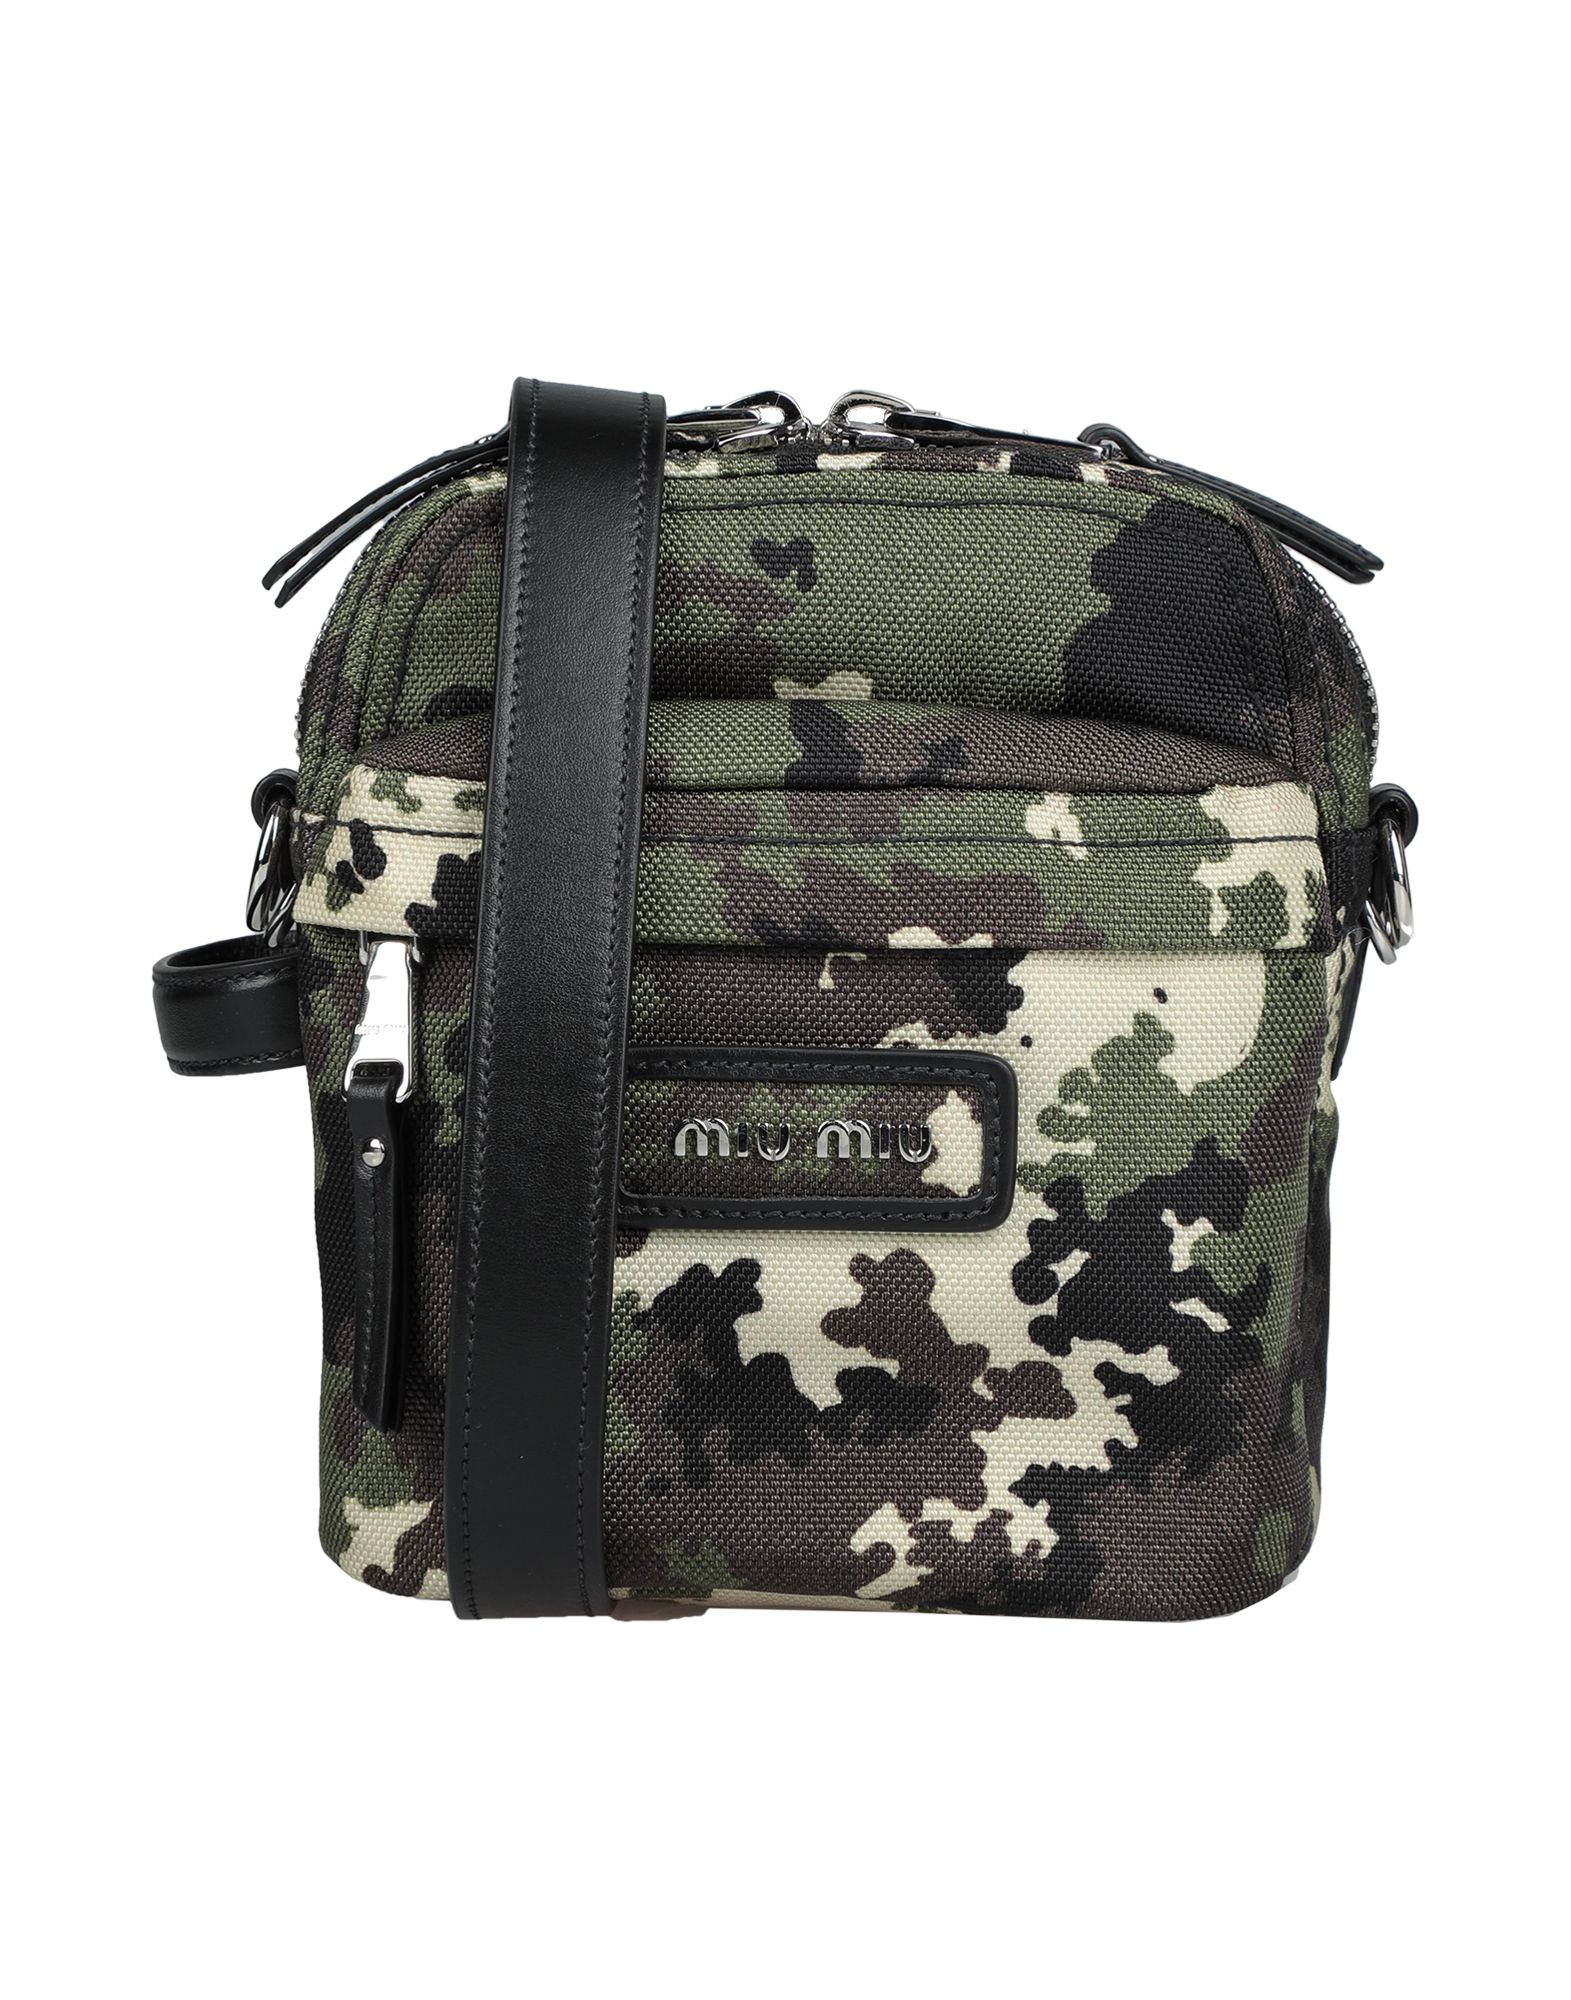 MIU MIU Cross-body bags - Item 45506410